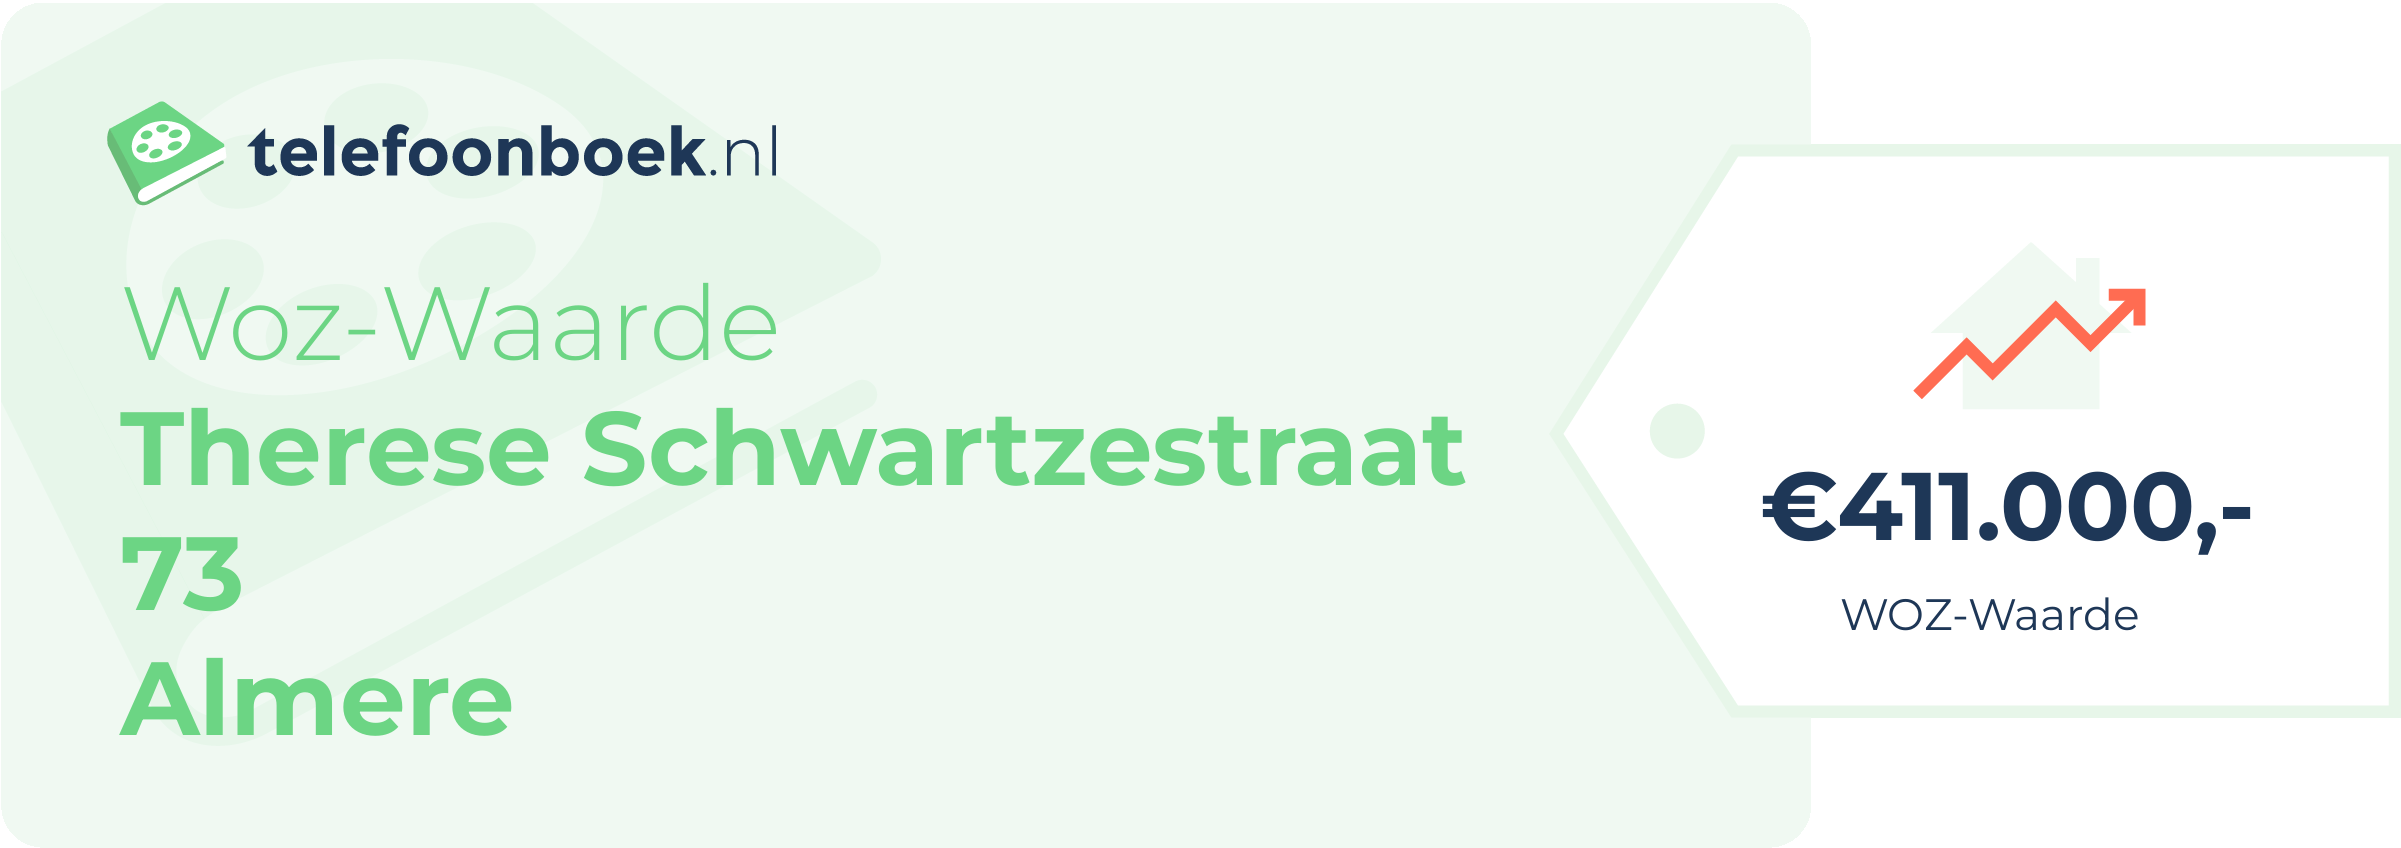 WOZ-waarde Therese Schwartzestraat 73 Almere